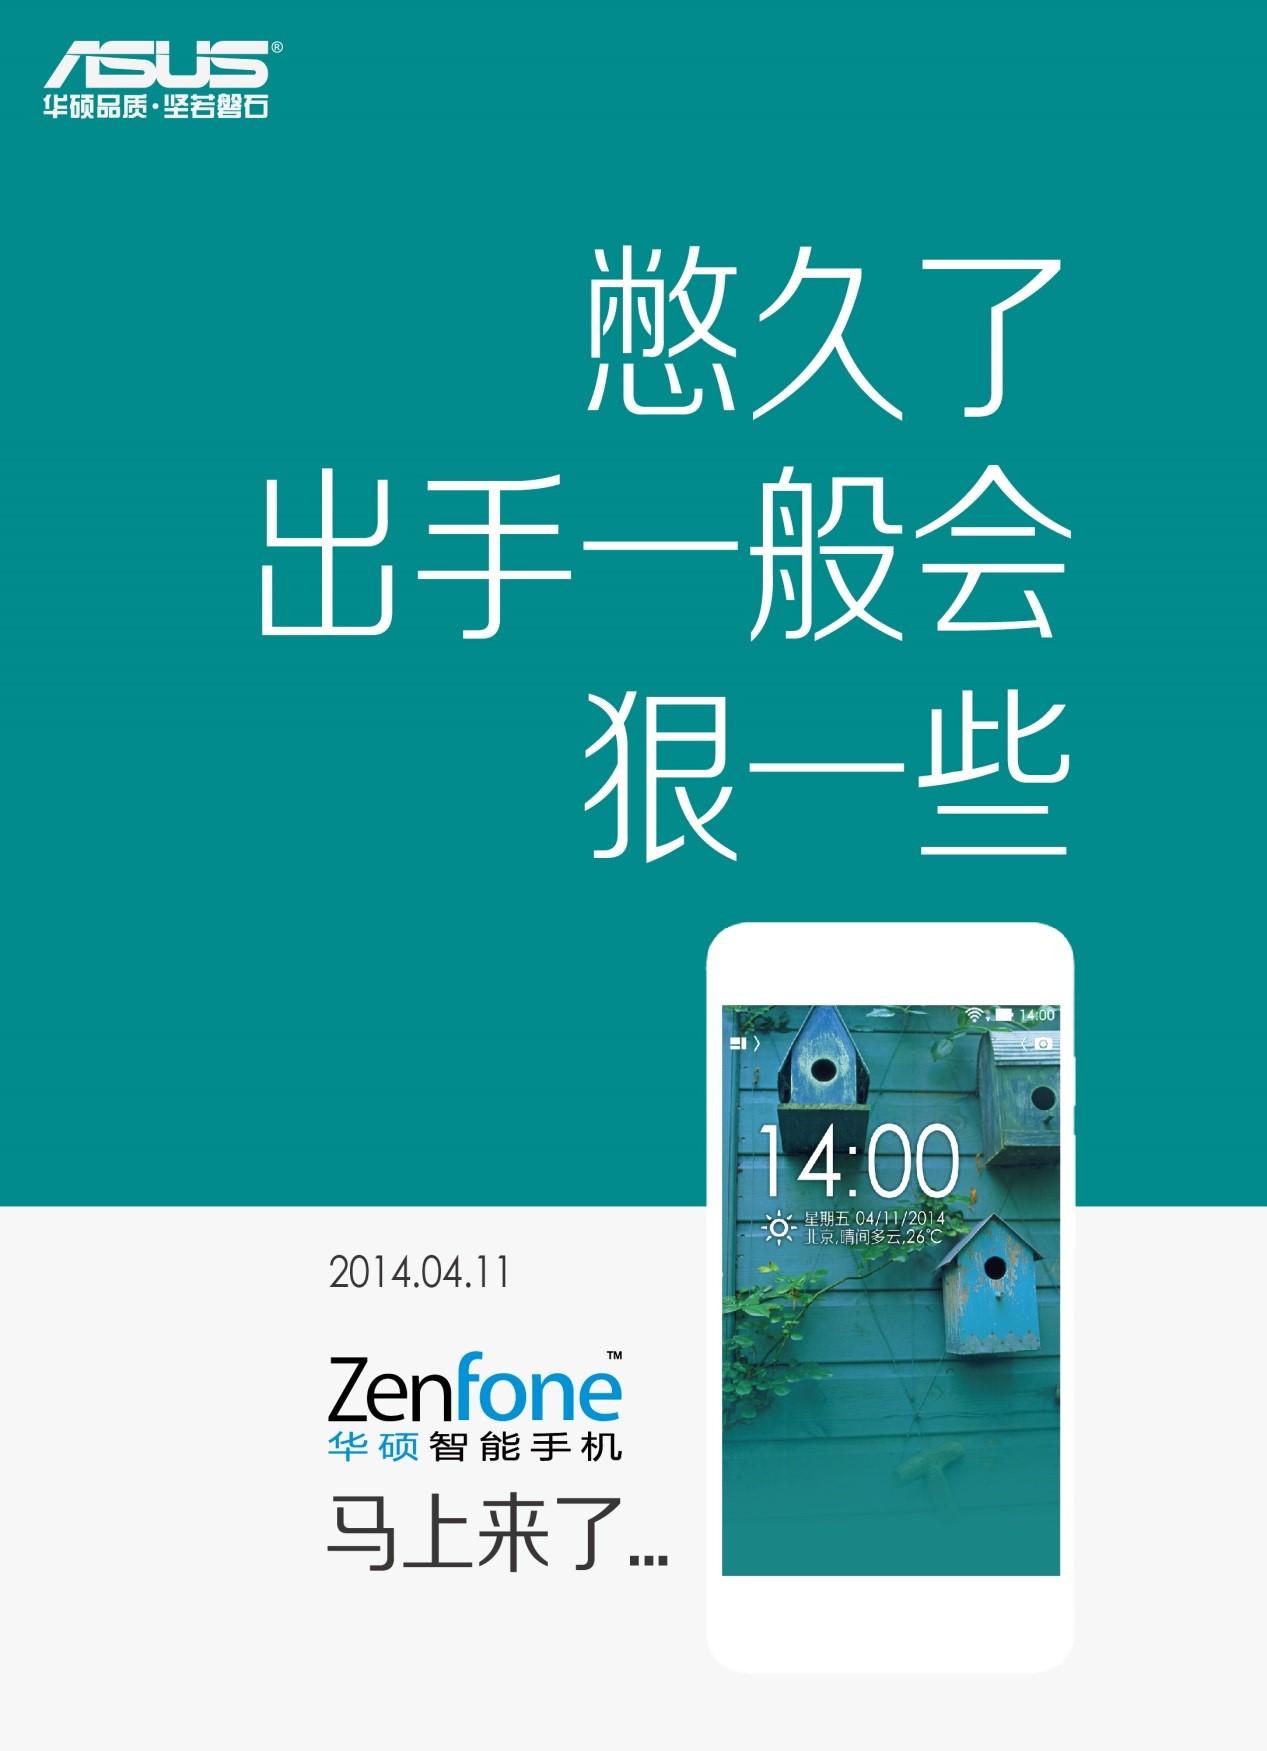 华硕智能手机ZenFone即将内地上市 官微发布